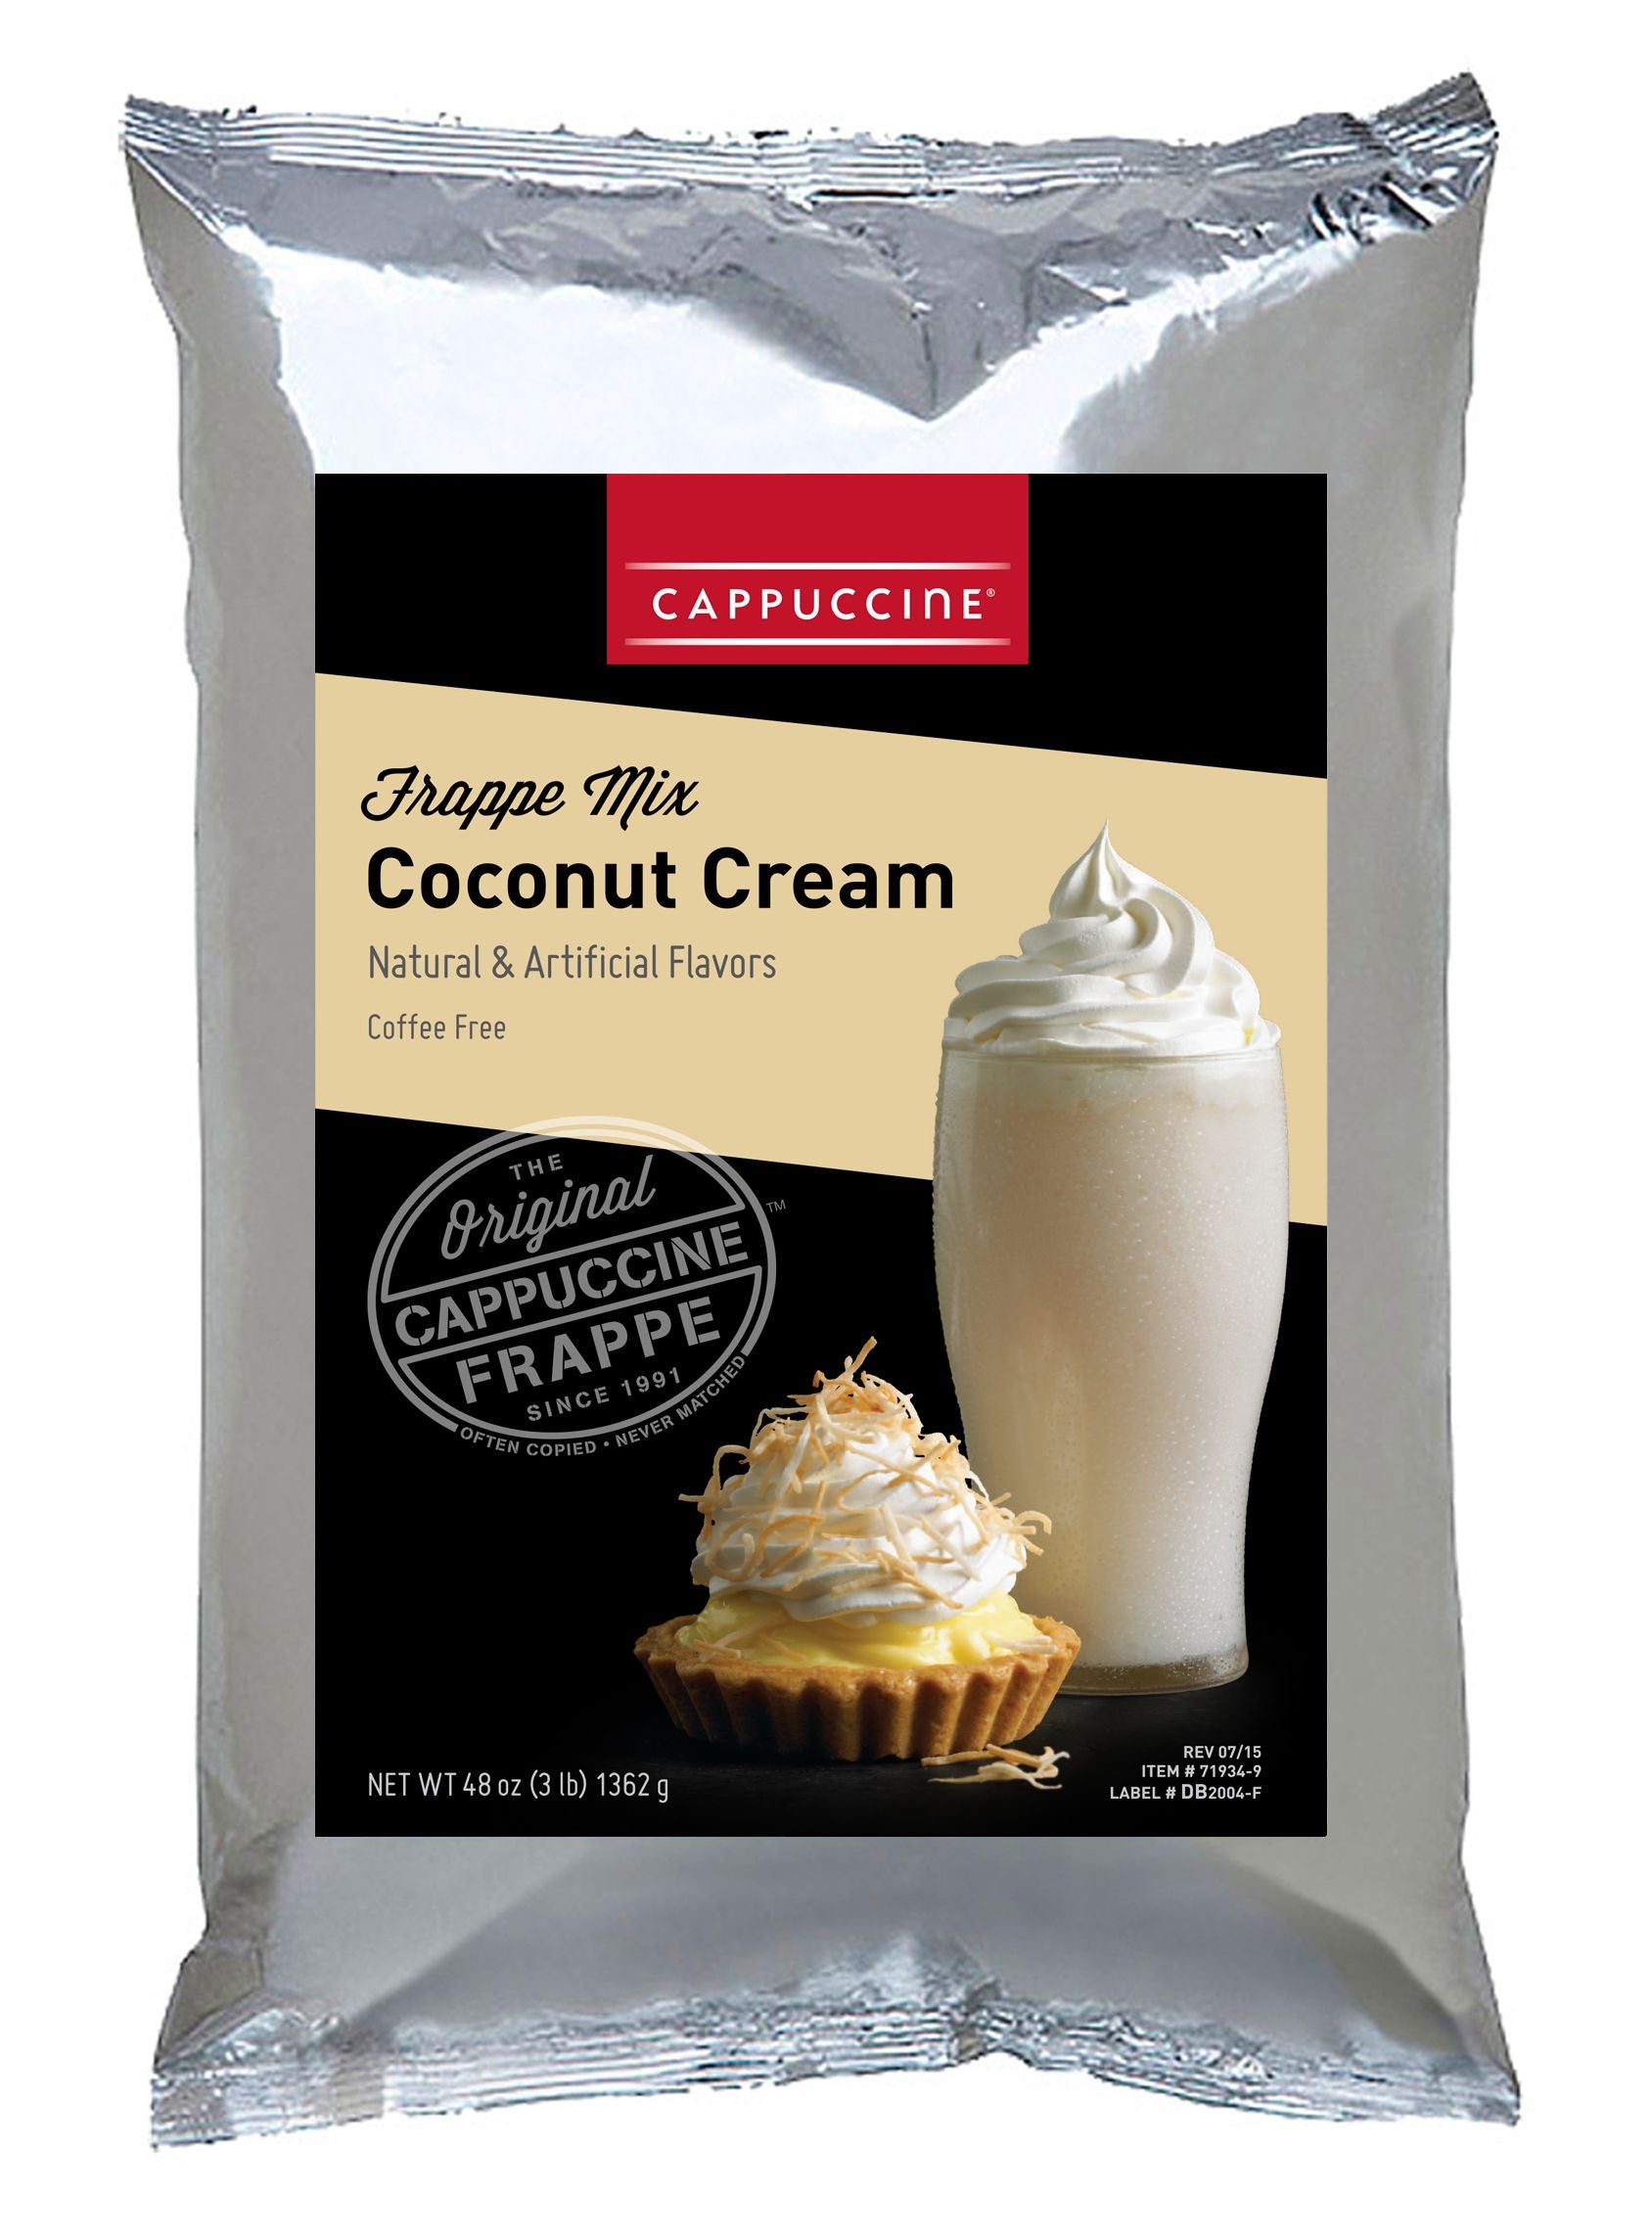 Cappuccine Frappe Mix - 3 lb. Bulk Bag: Coconut Cream-1